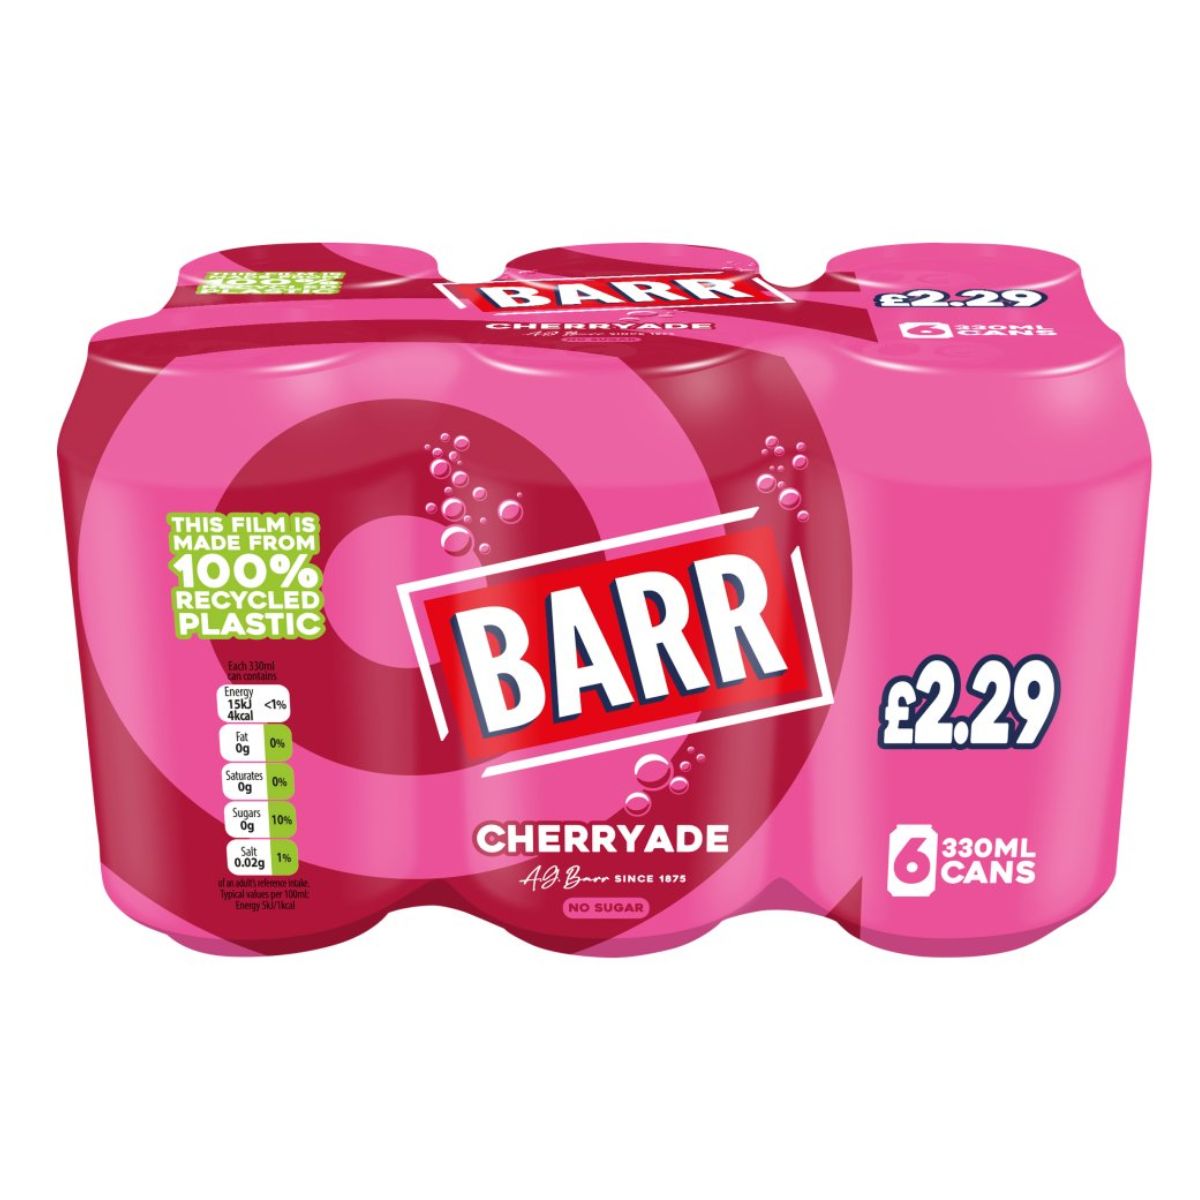 A pack of Barr - Cherryade - 6x330ml.